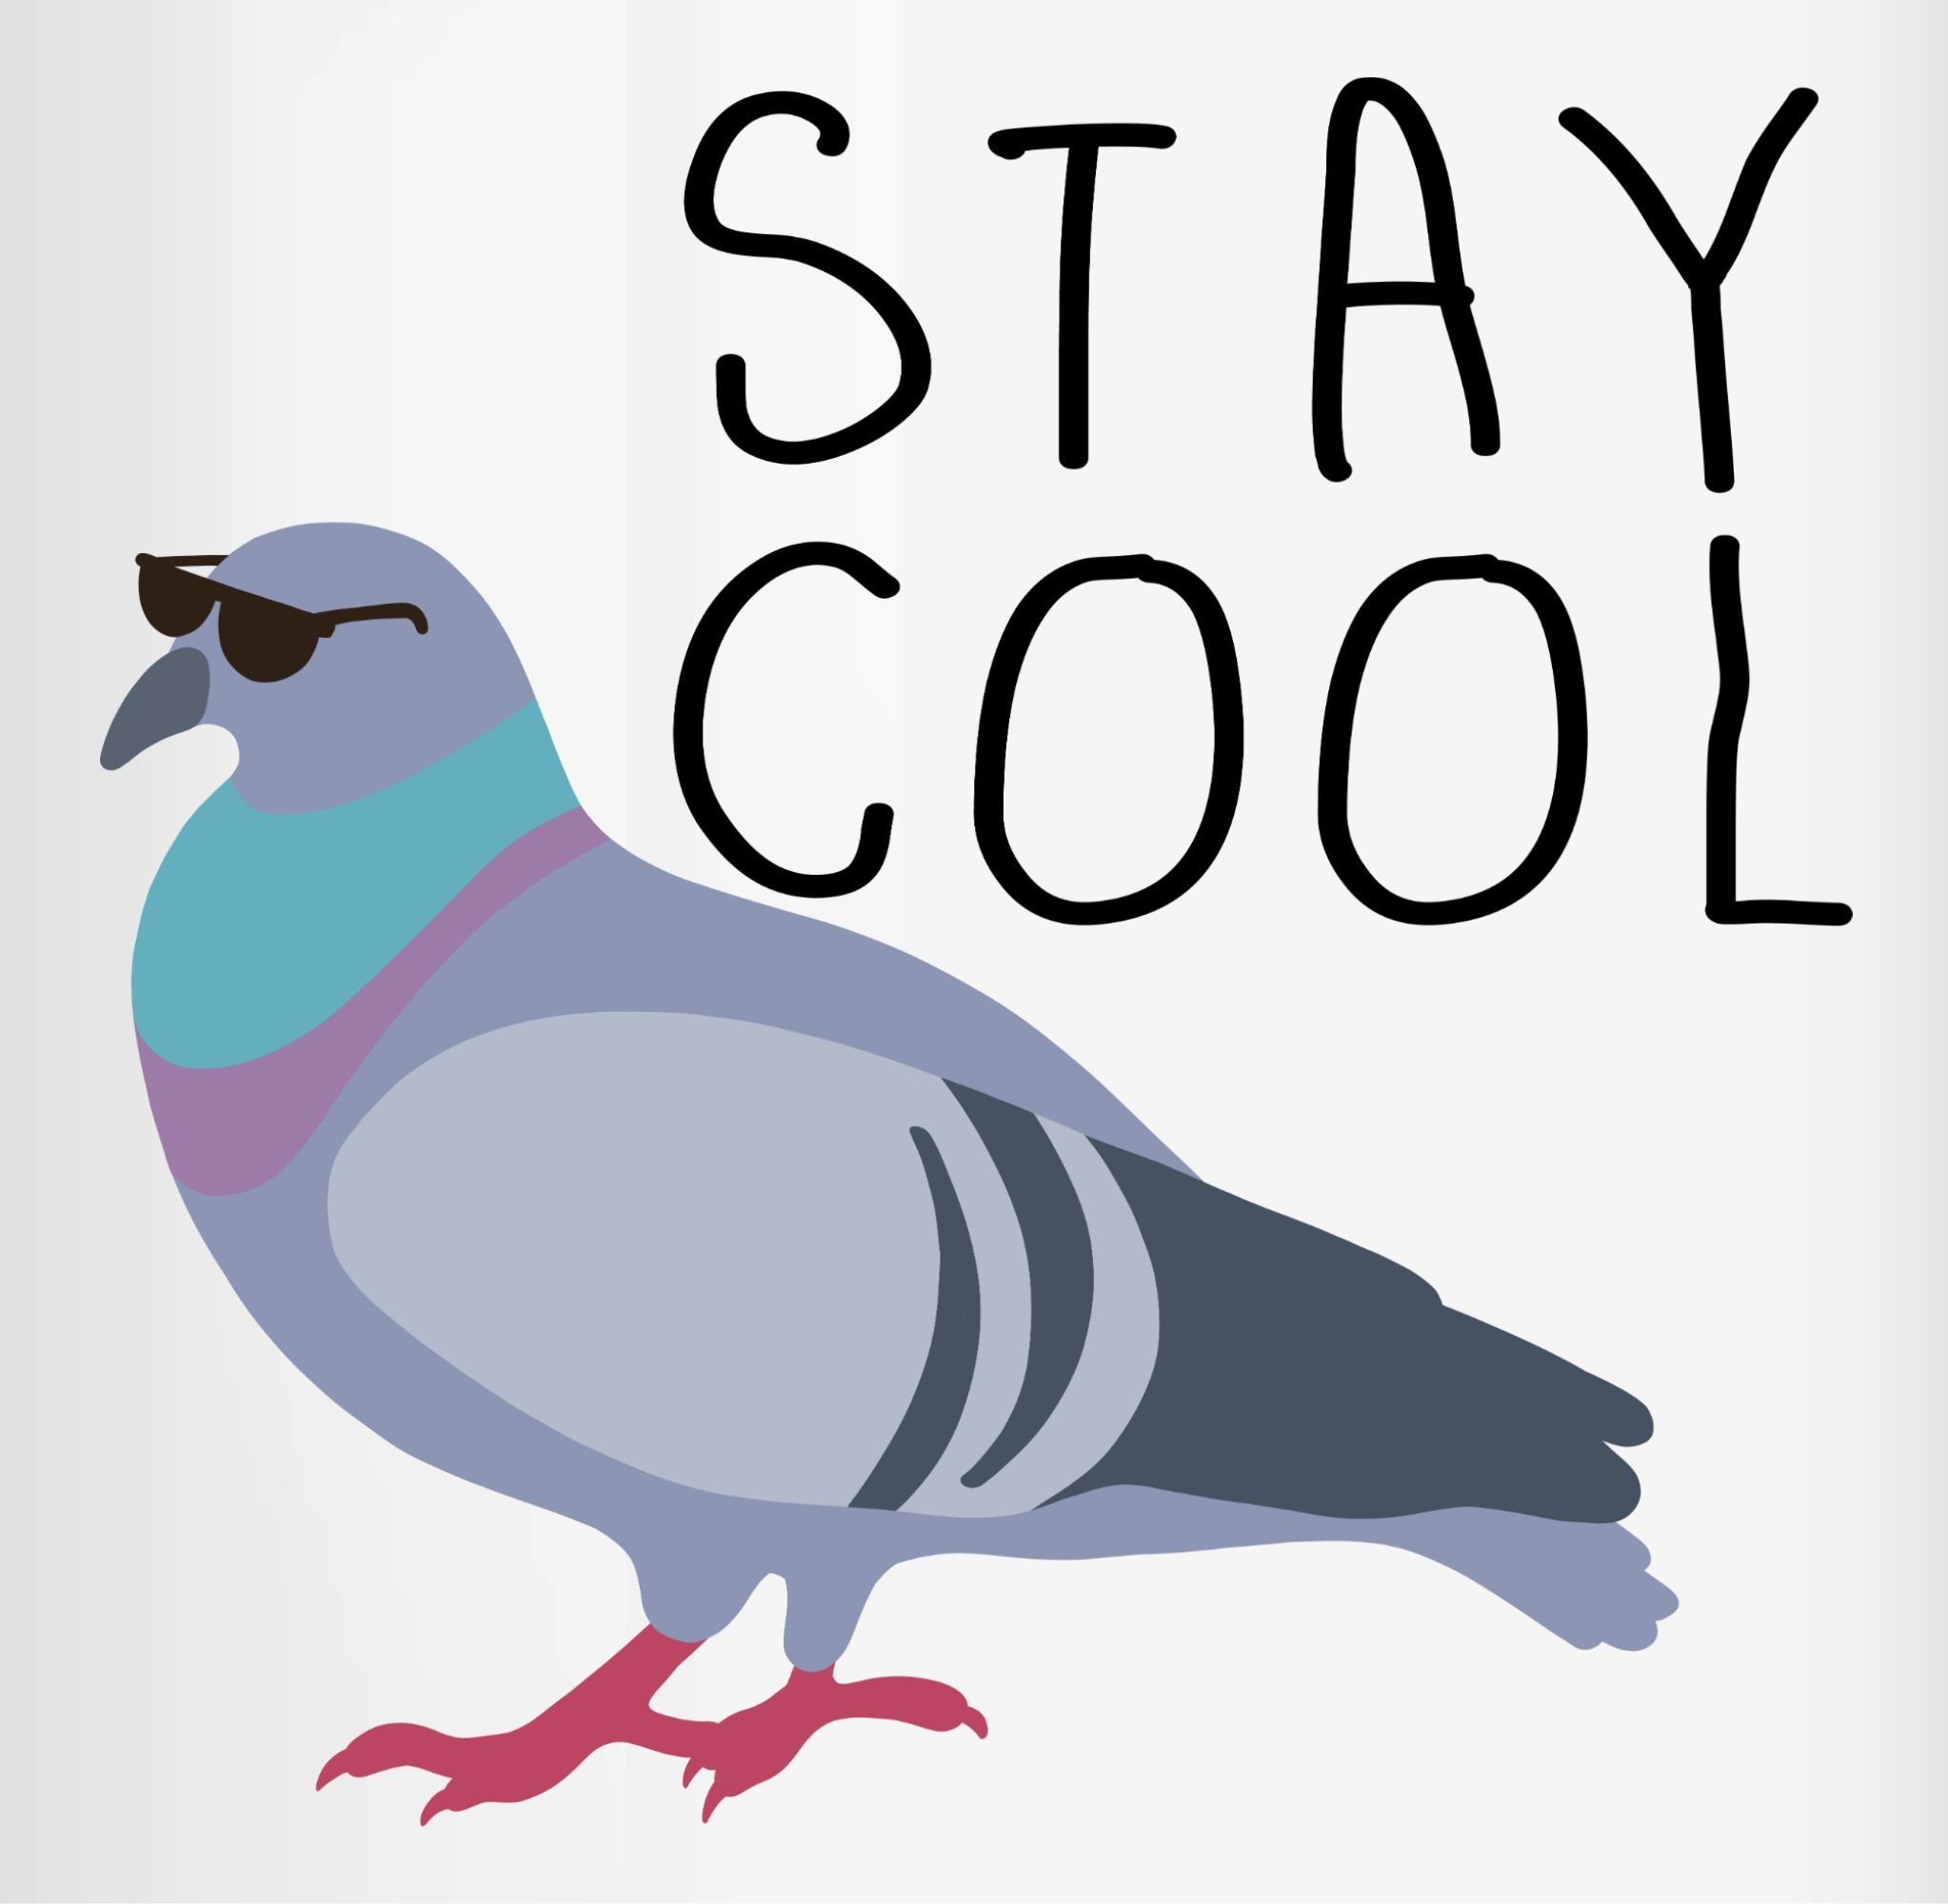 Stay Cool, Statement Tasse Keramik, Sprüche Dunkelblau 1 Shirtracer